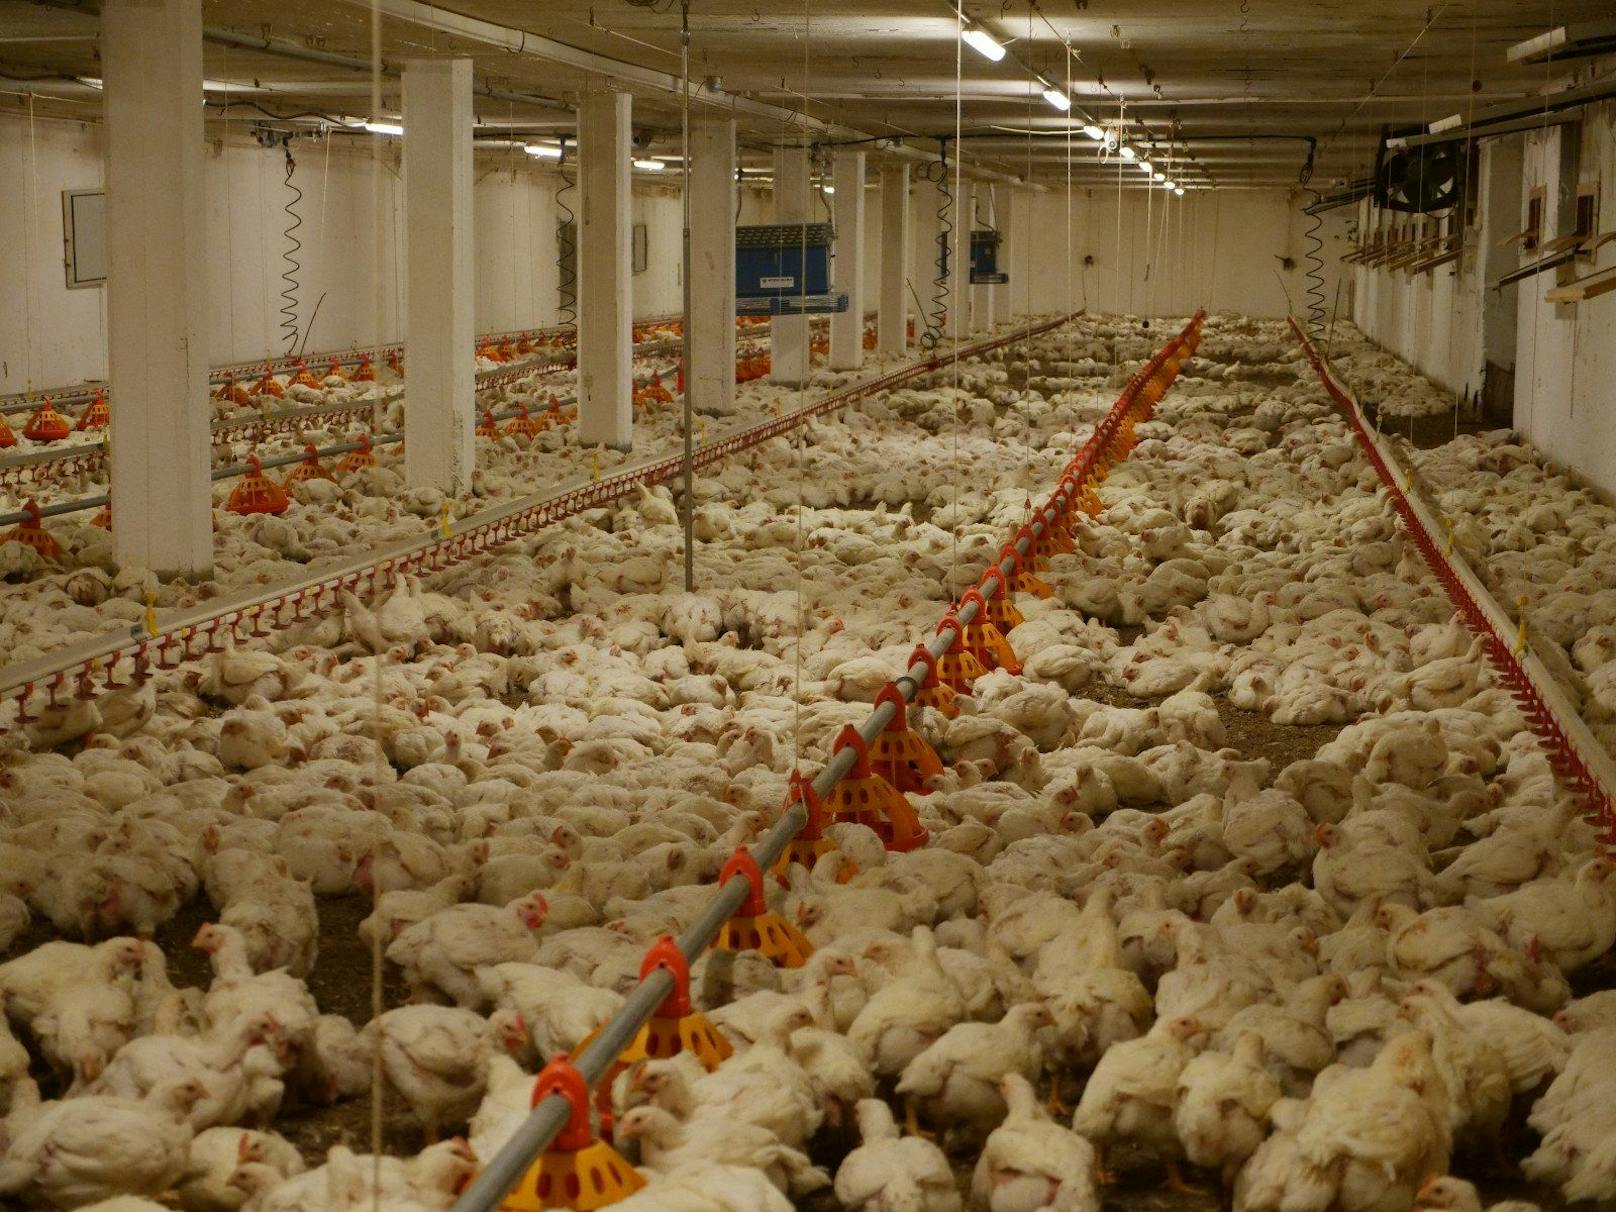 Laut Tierschutzgesetz ist es verboten, Tiere aus solchen Zuchten zu verwenden, doch die enorme Gier nach massenhaft billigem Hühnerfleisch scheint dieses Gesetz auszuhebeln.